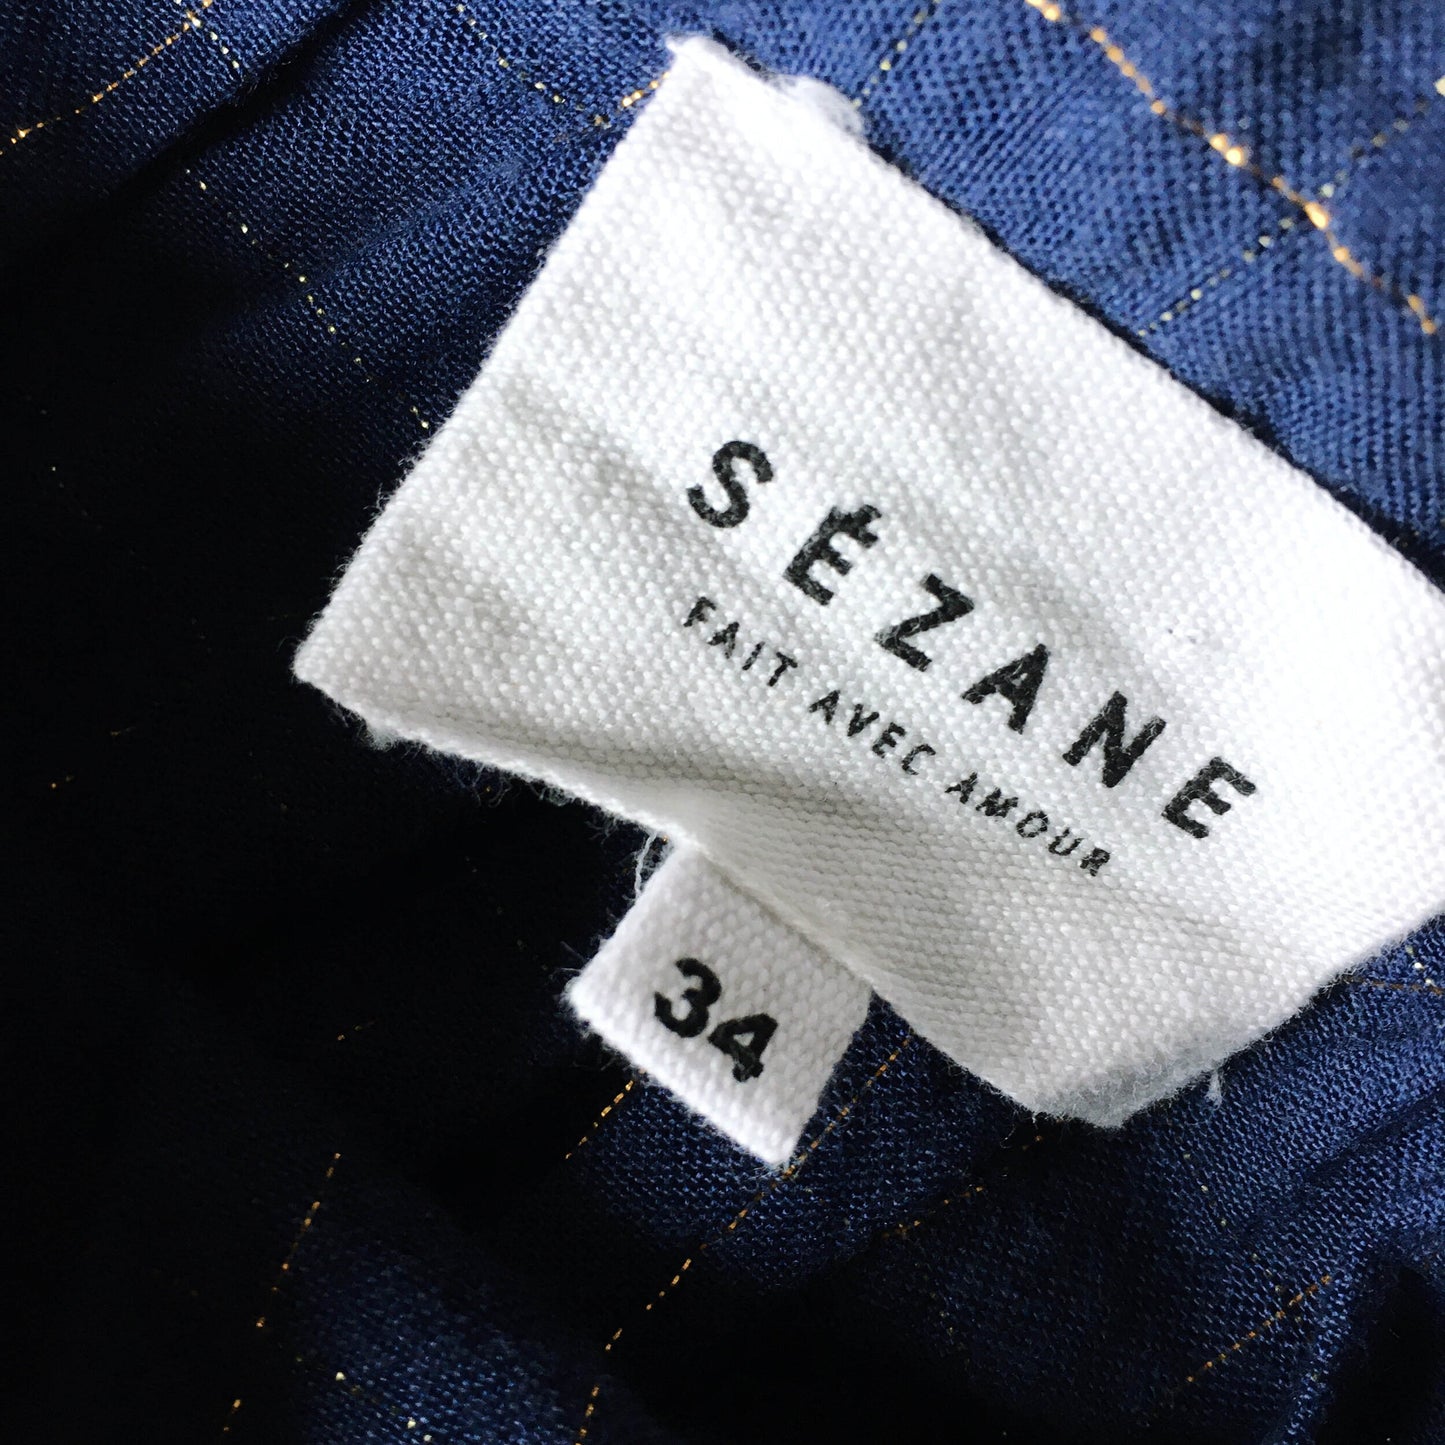 sézane button back romantic blouse - size 34